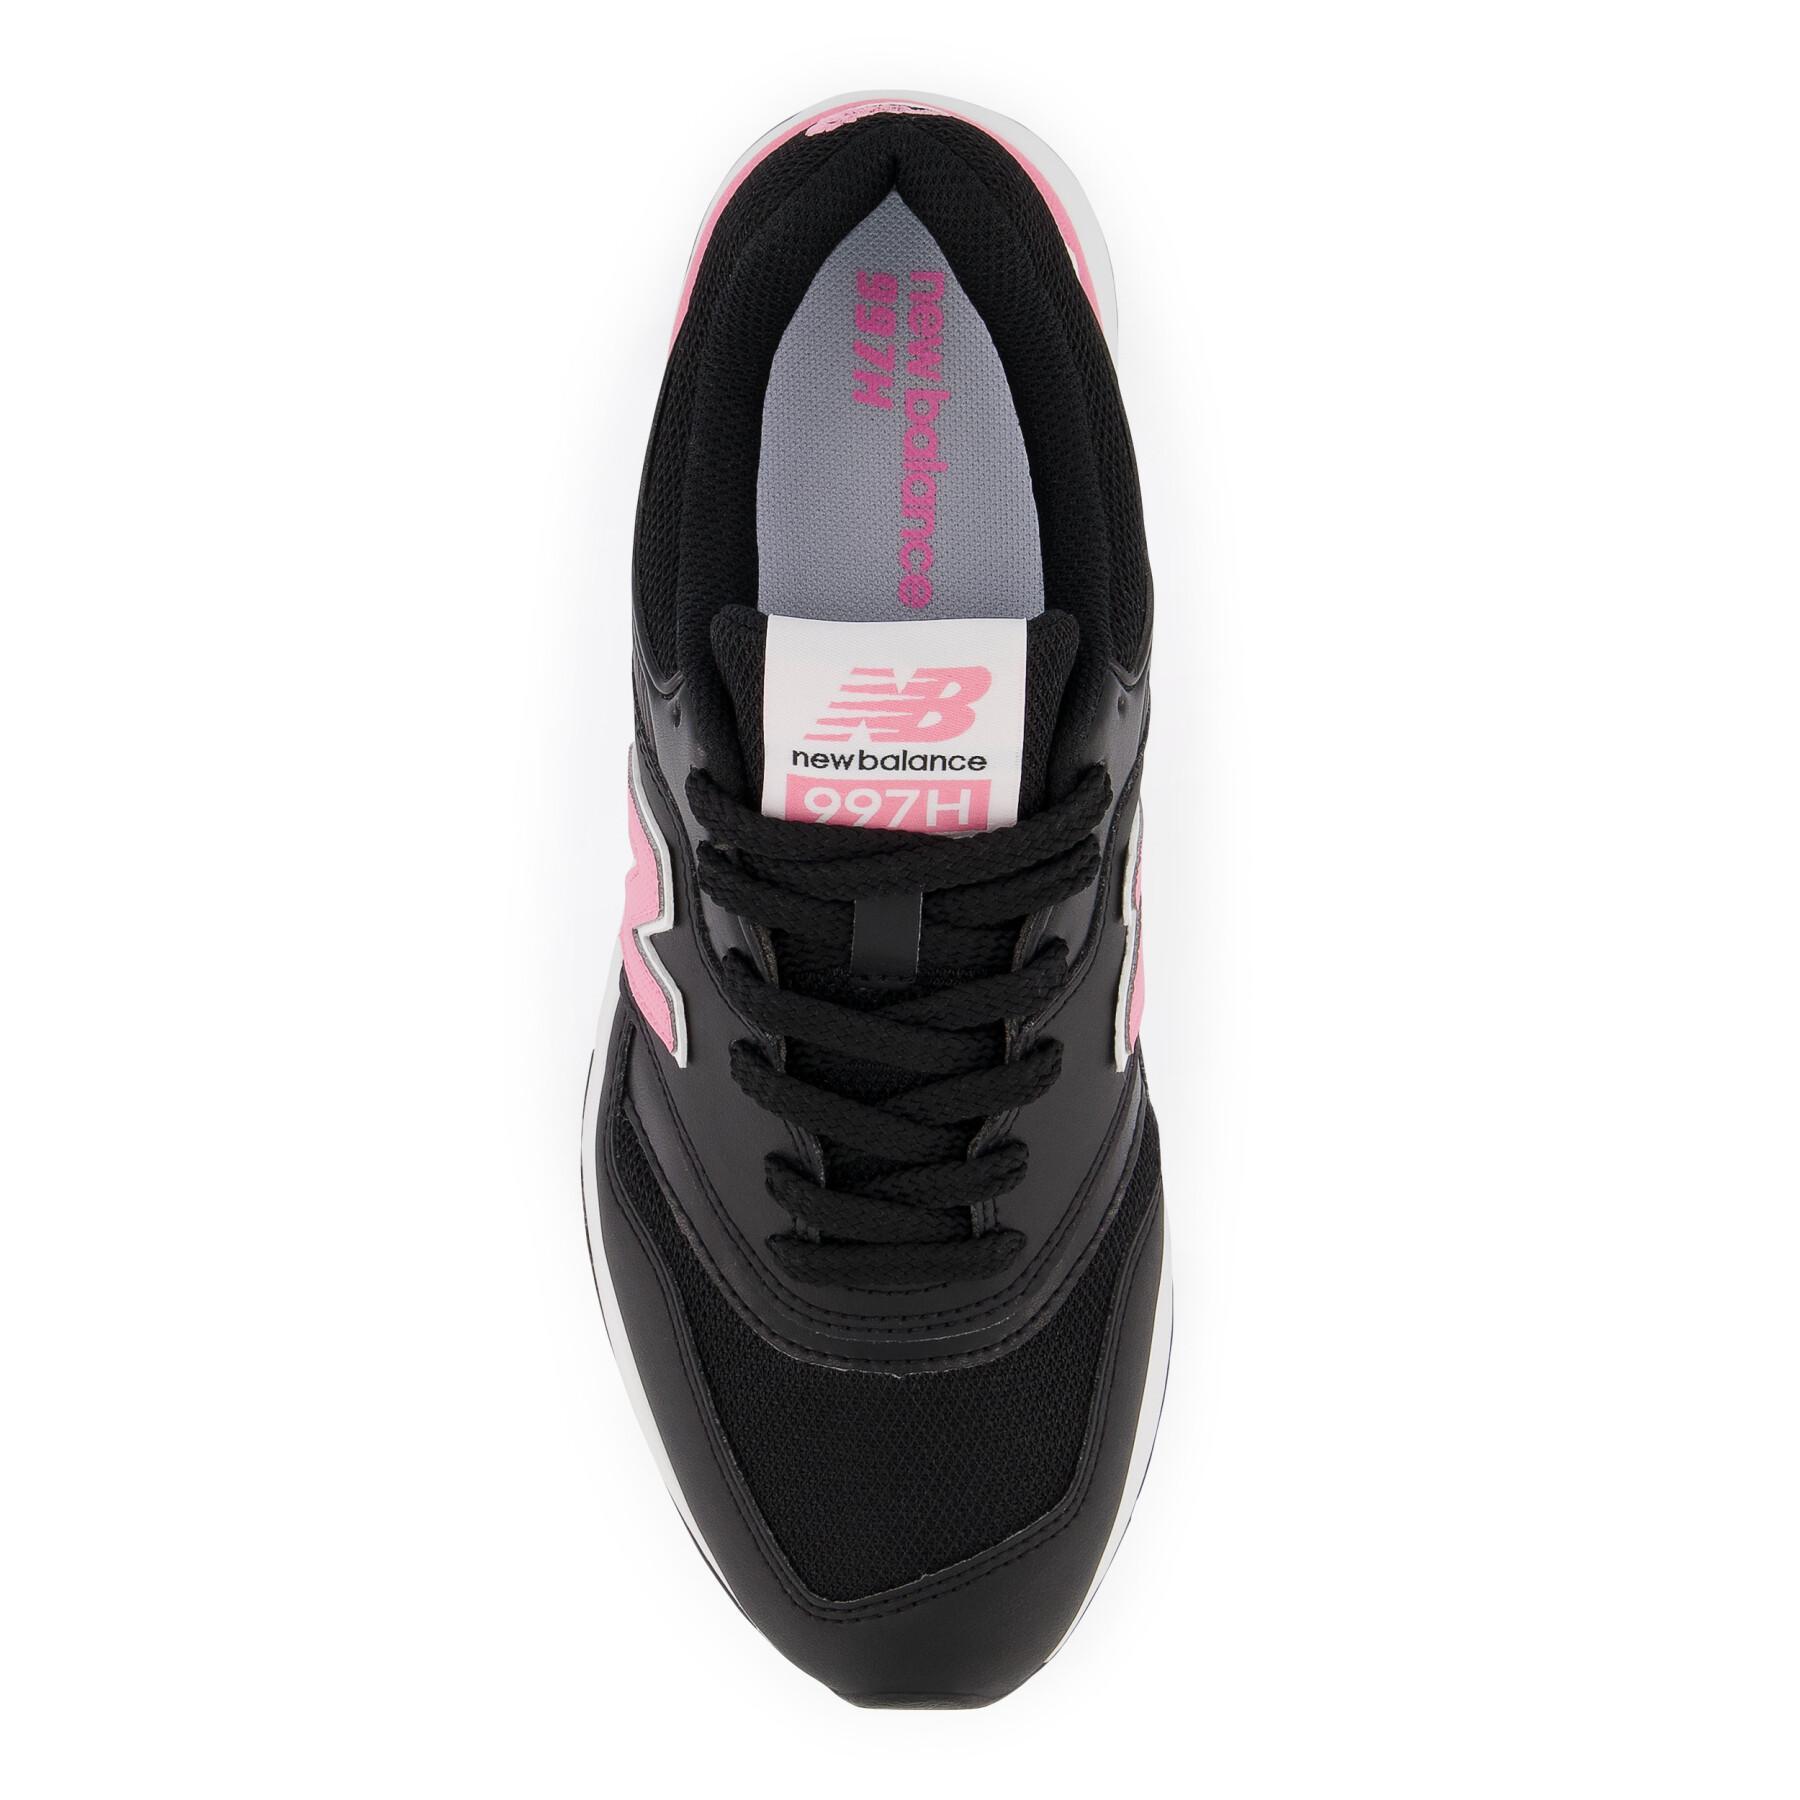 Sneakers für Frauen New Balance 997